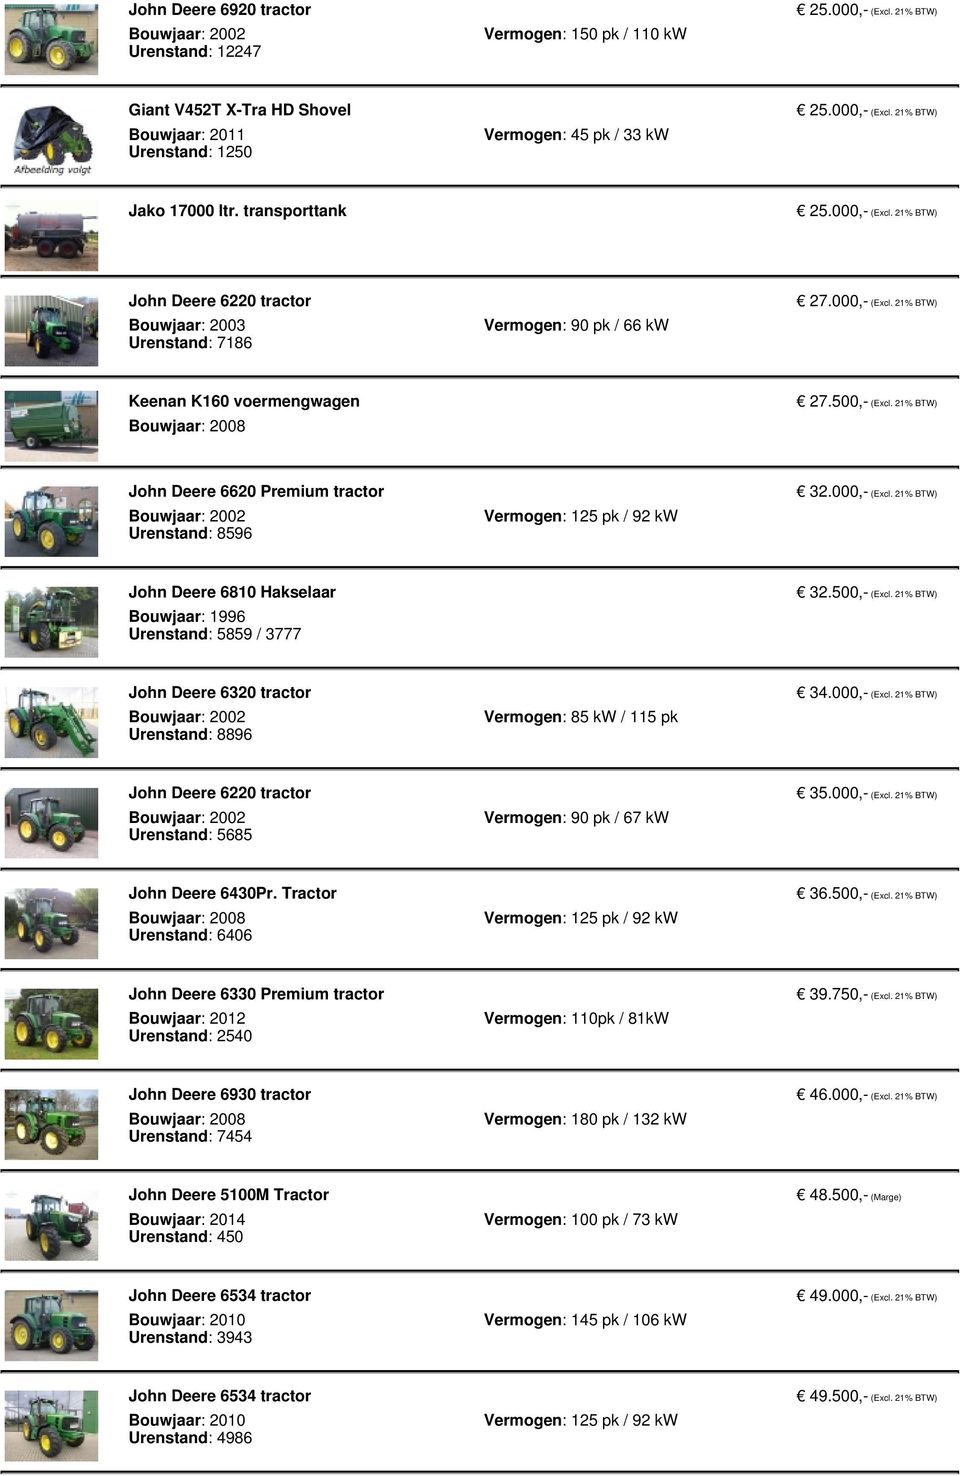 21% BTW) John Deere 6620 Premium tractor Urenstand: 8596 Vermogen: 125 pk / 92 kw 32.000,- (Excl. 21% BTW) John Deere 6810 Hakselaar Bouwjaar: 1996 Urenstand: 5859 / 3777 32.500,- (Excl.